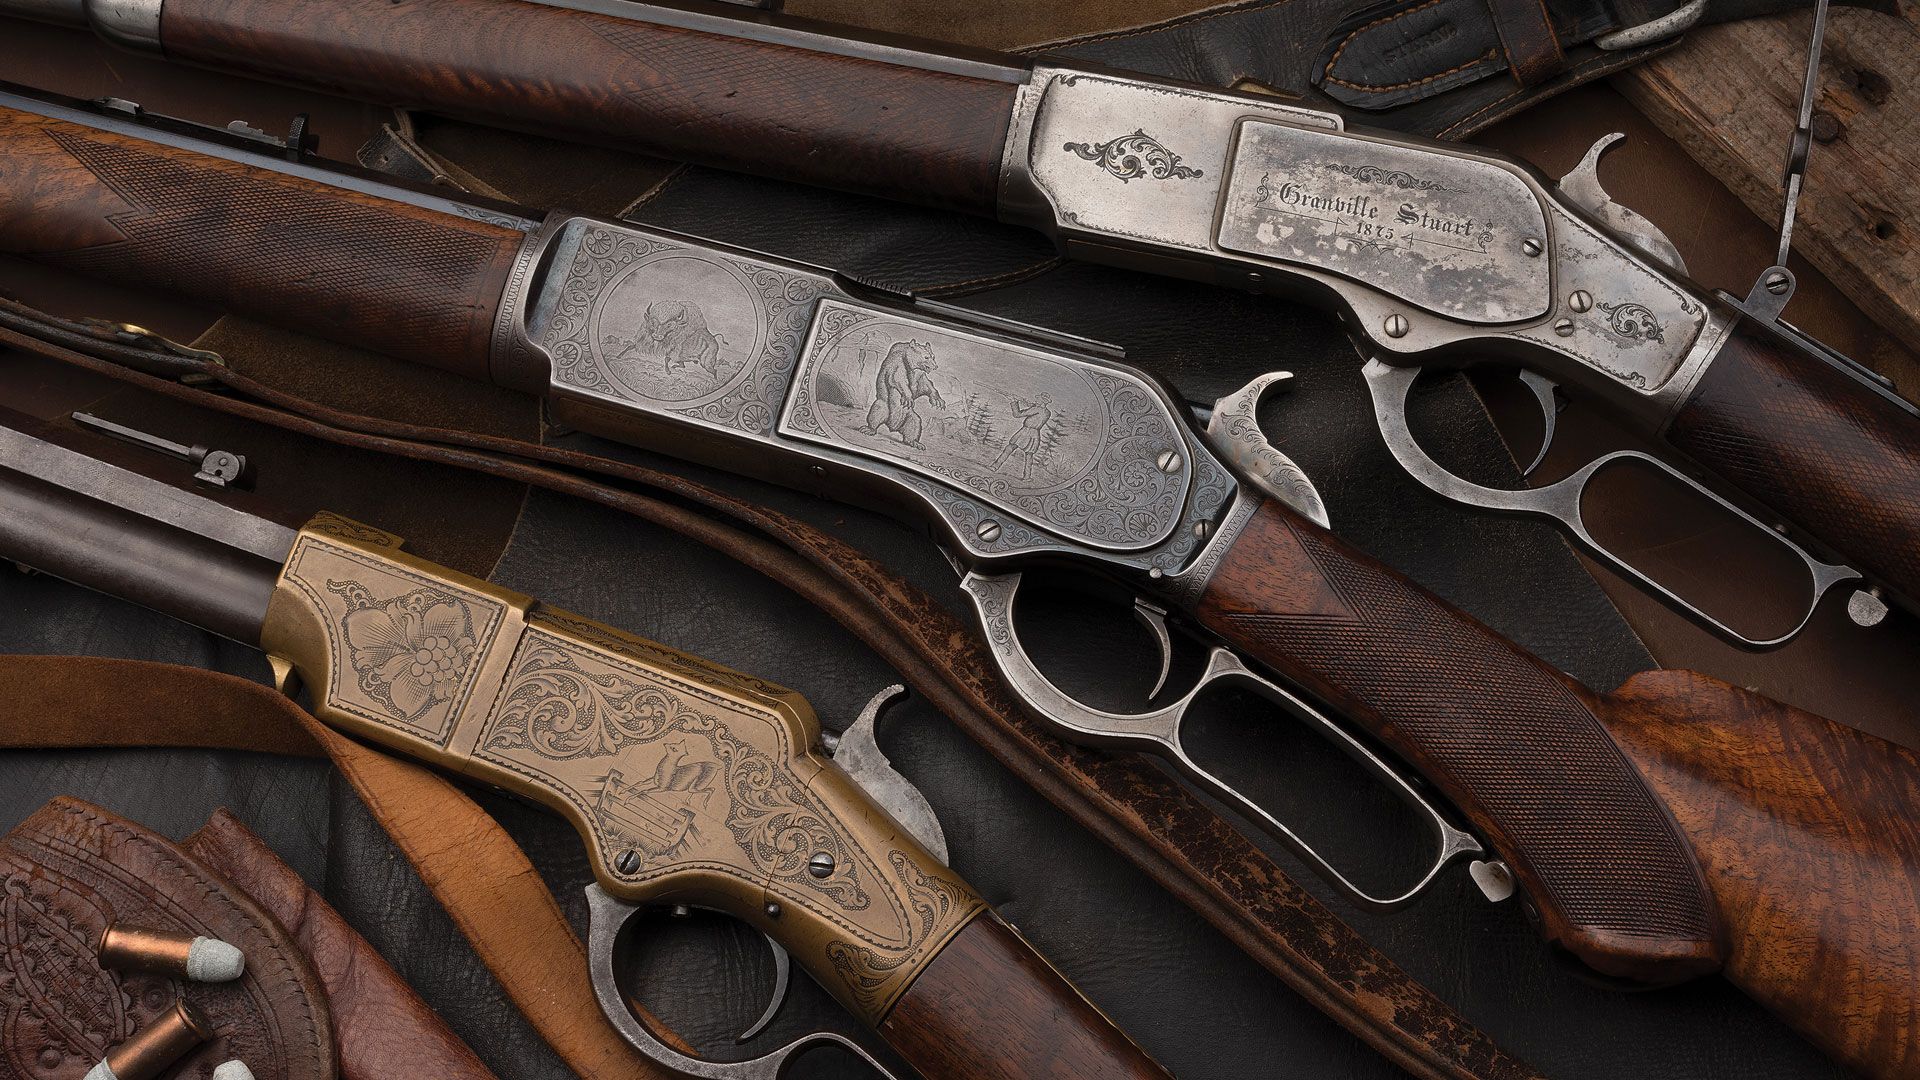 Granville Stuarts personal items December 2020 firearms Auction